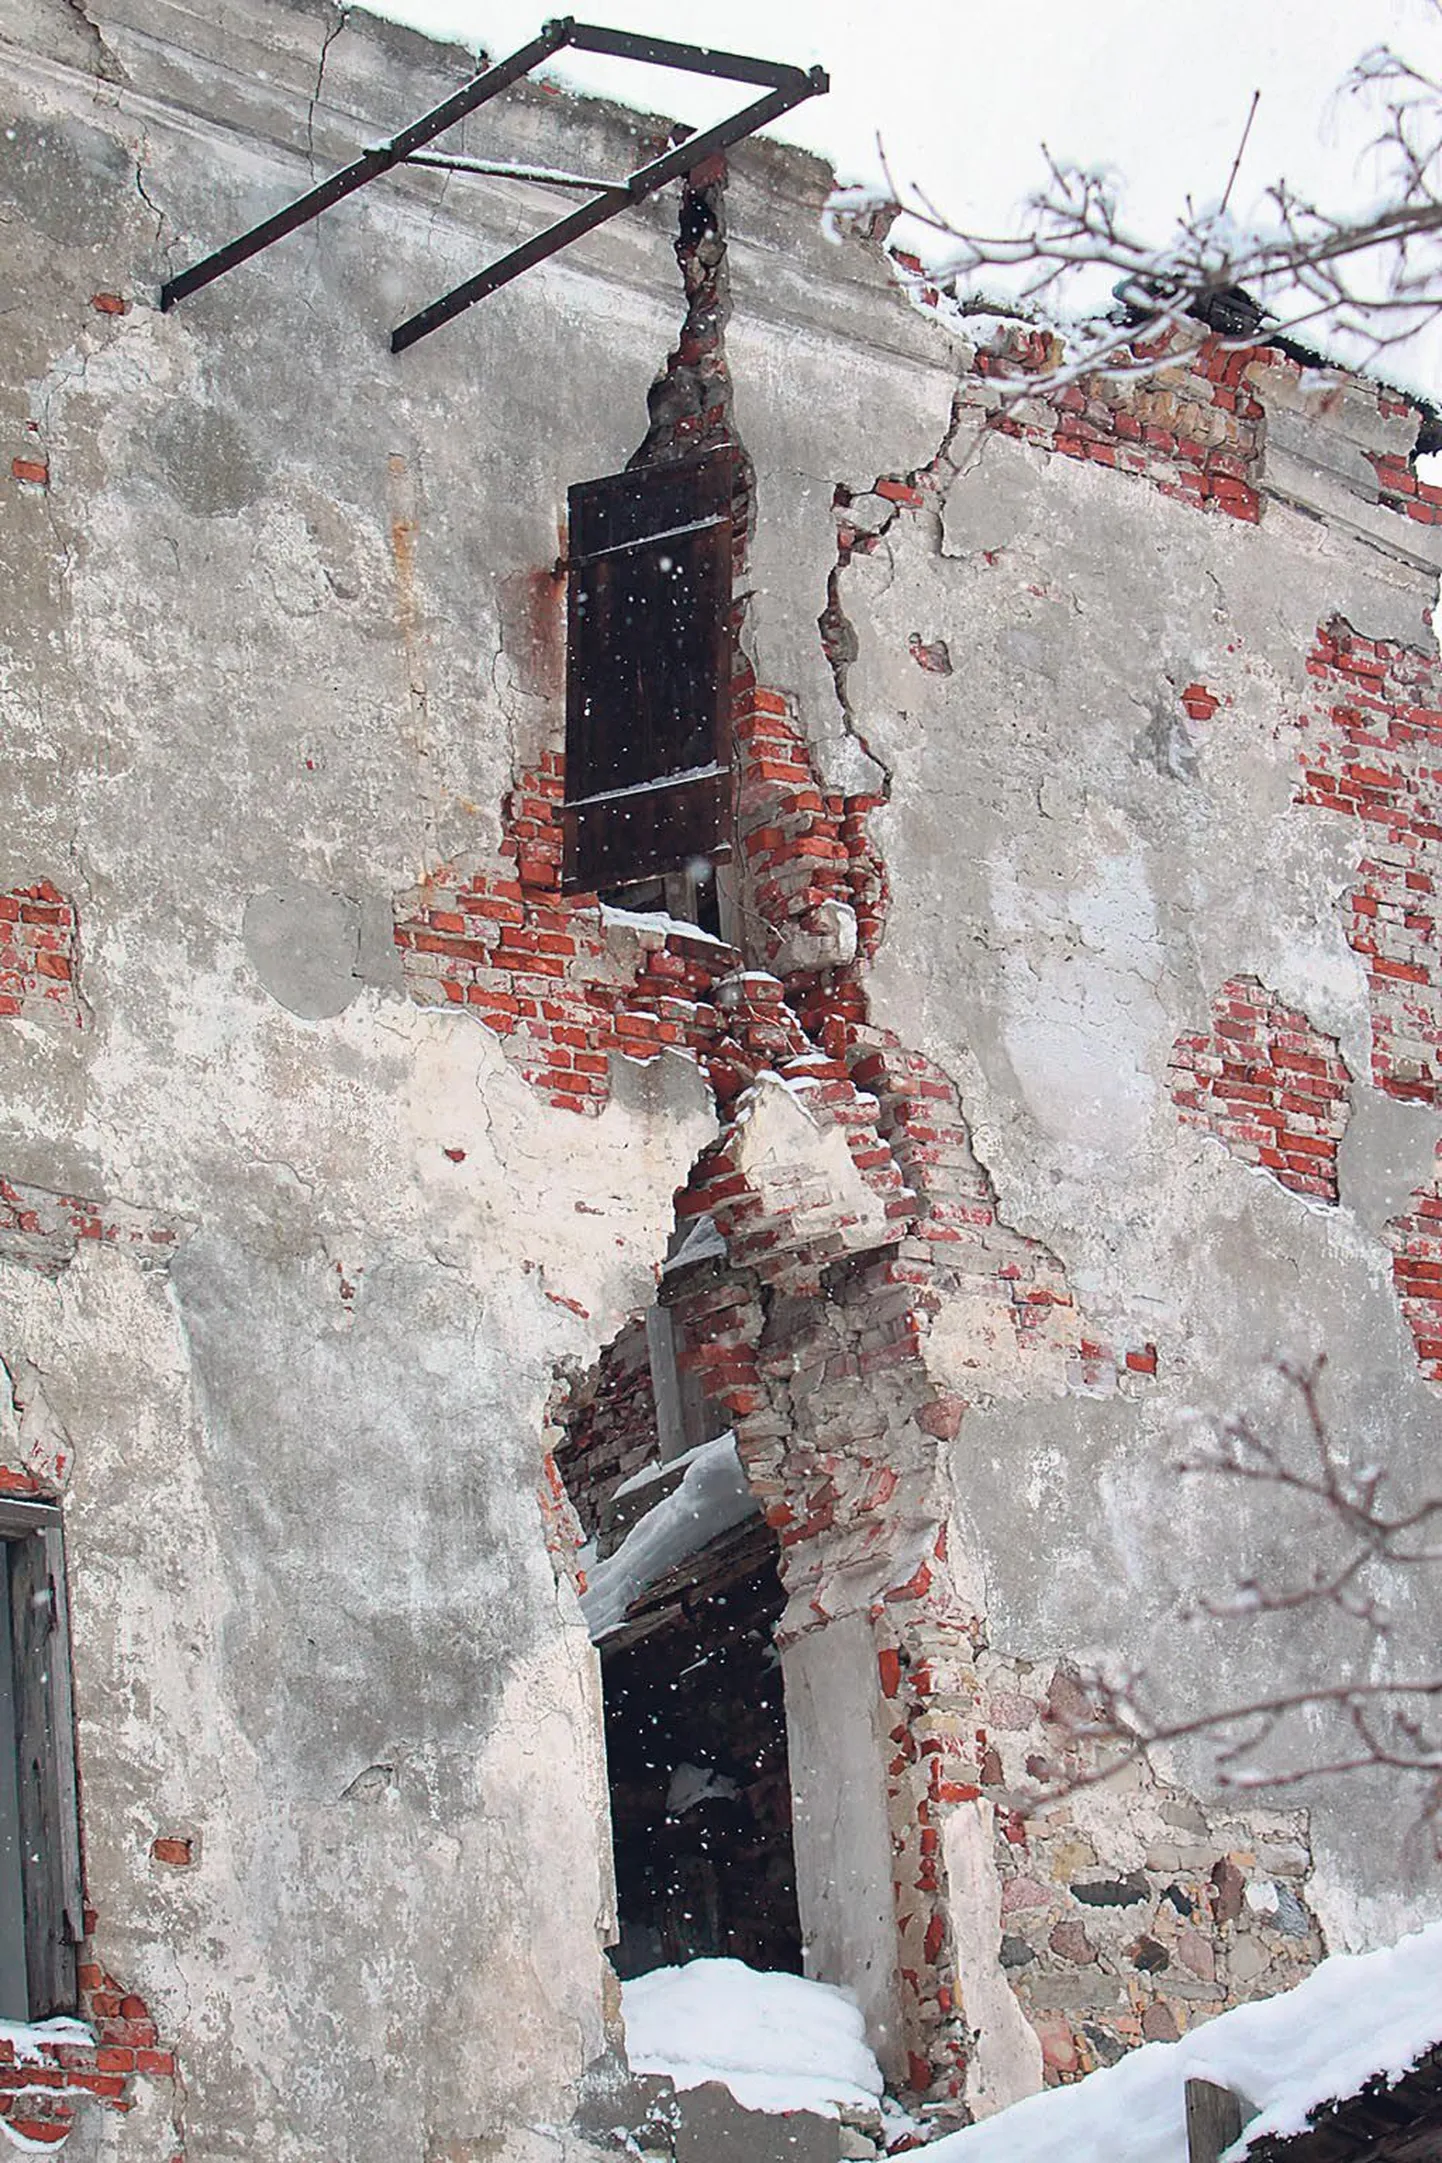 Näikse, nagu tahaks soolaaida omanik Raivo Tõnismaa lammutuse pealt säästa ja ootaks, millal vana maja ise kokku variseb.